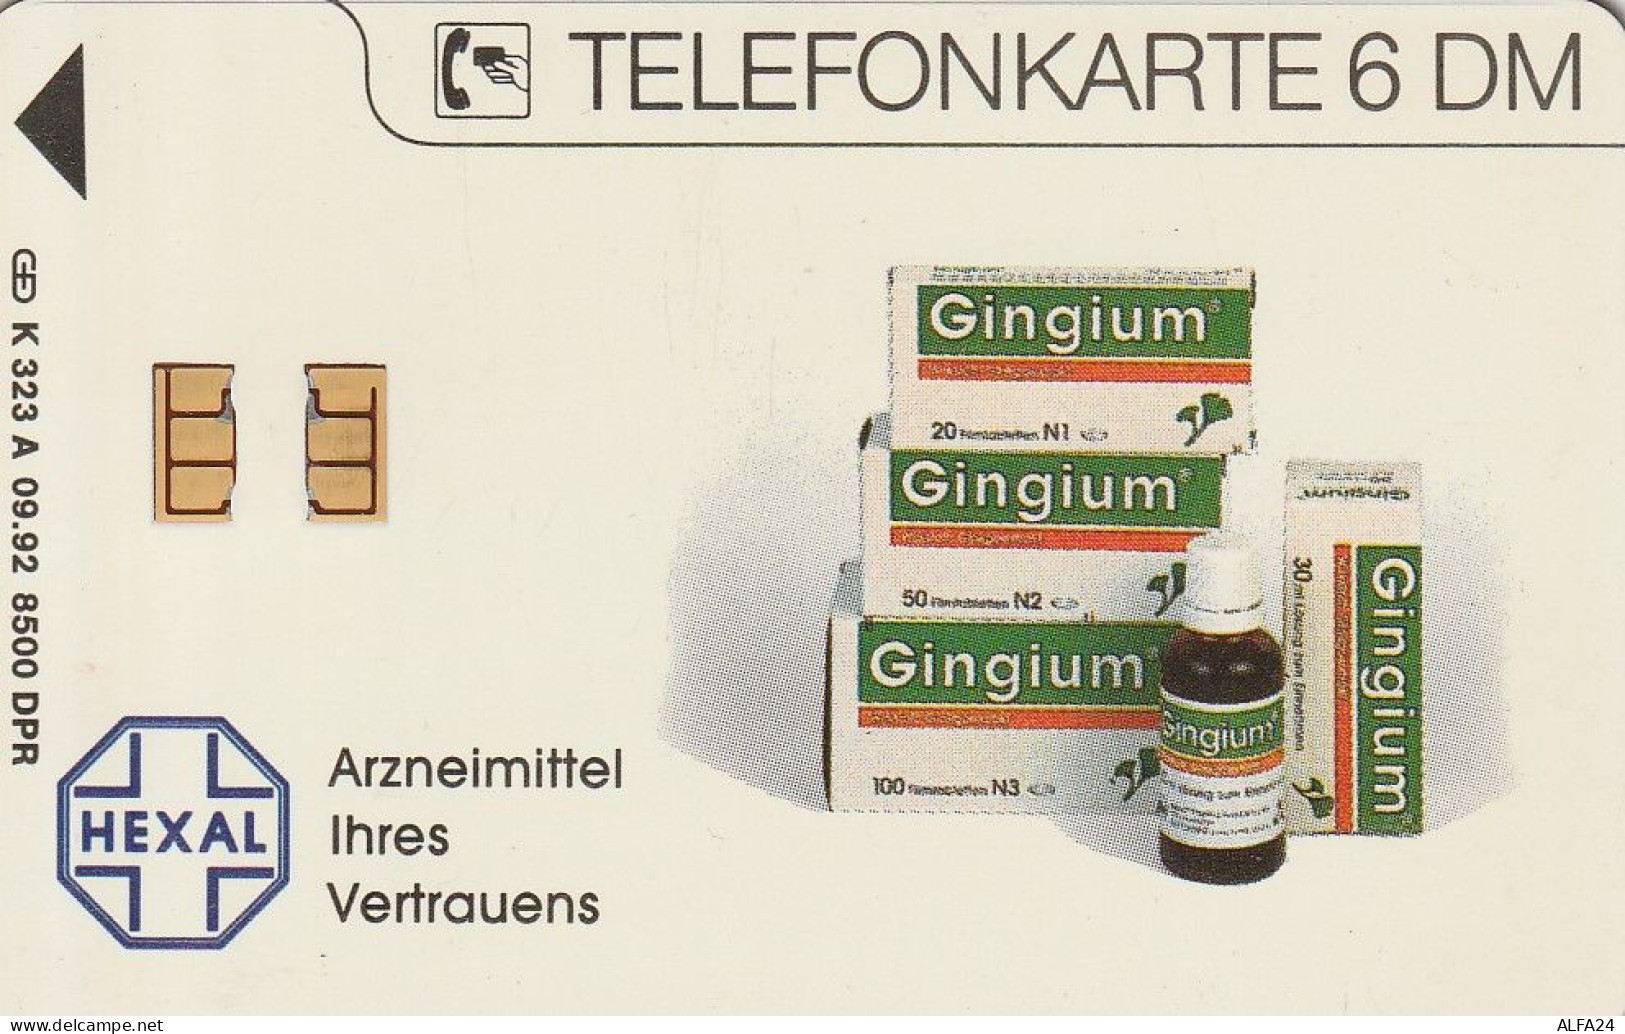 PHONE CARD GERMANIA SERIE A TIR.8500 (E79.41.8 - A + AD-Series : Publicitarias De Telekom AG Alemania